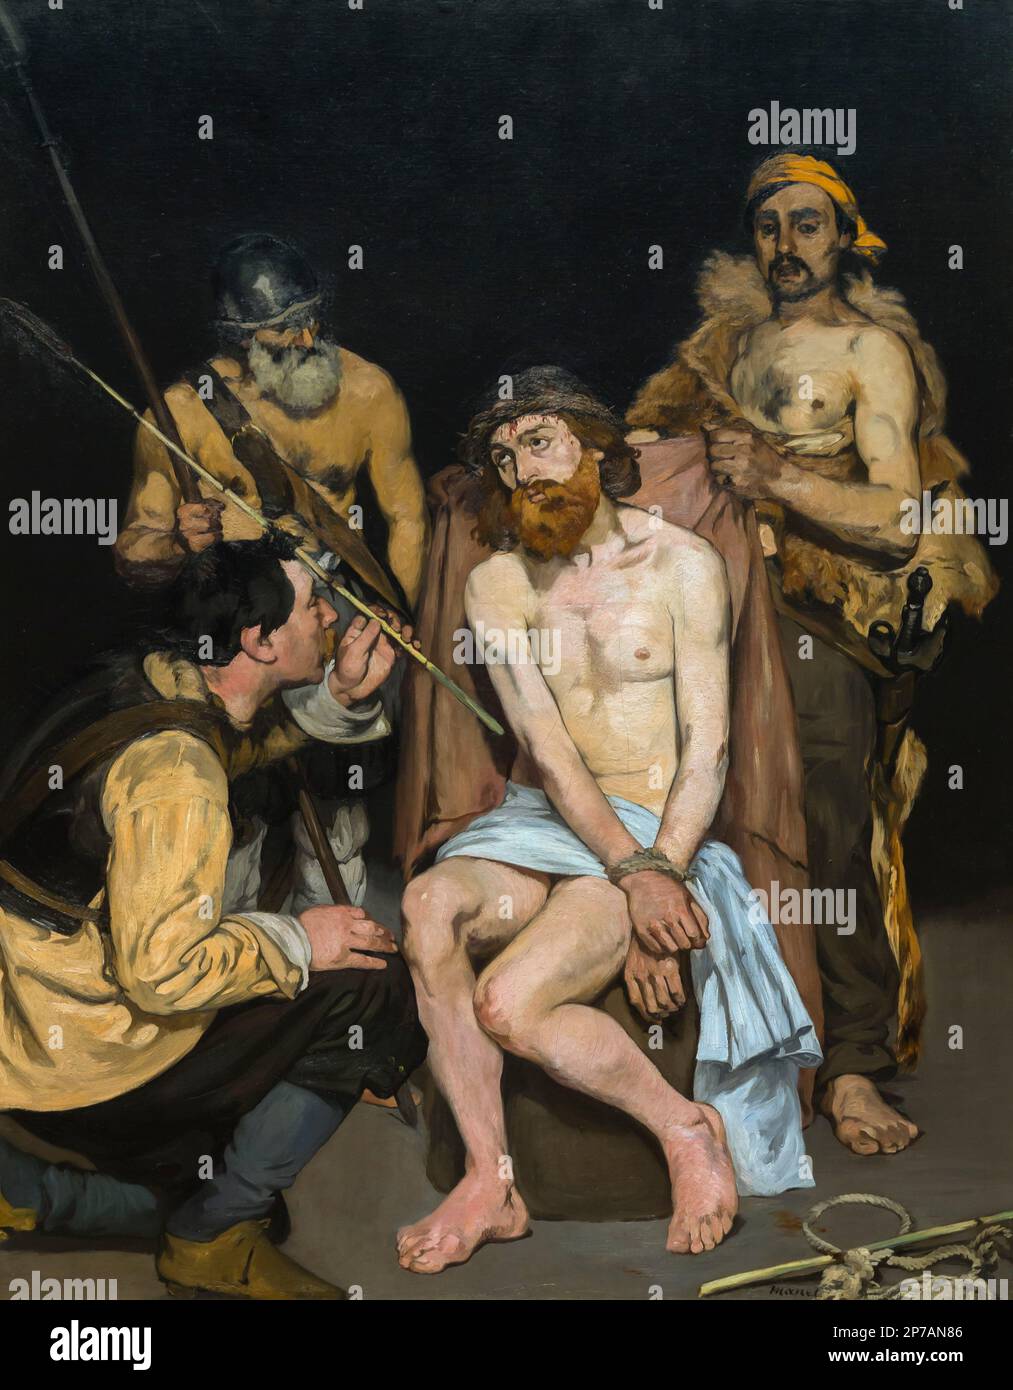 Jésus moqué par les soldats, Edouard Manet, 1865, Art Institute of Chicago, Chicago, Illinois, États-Unis, Amérique du Nord, Banque D'Images